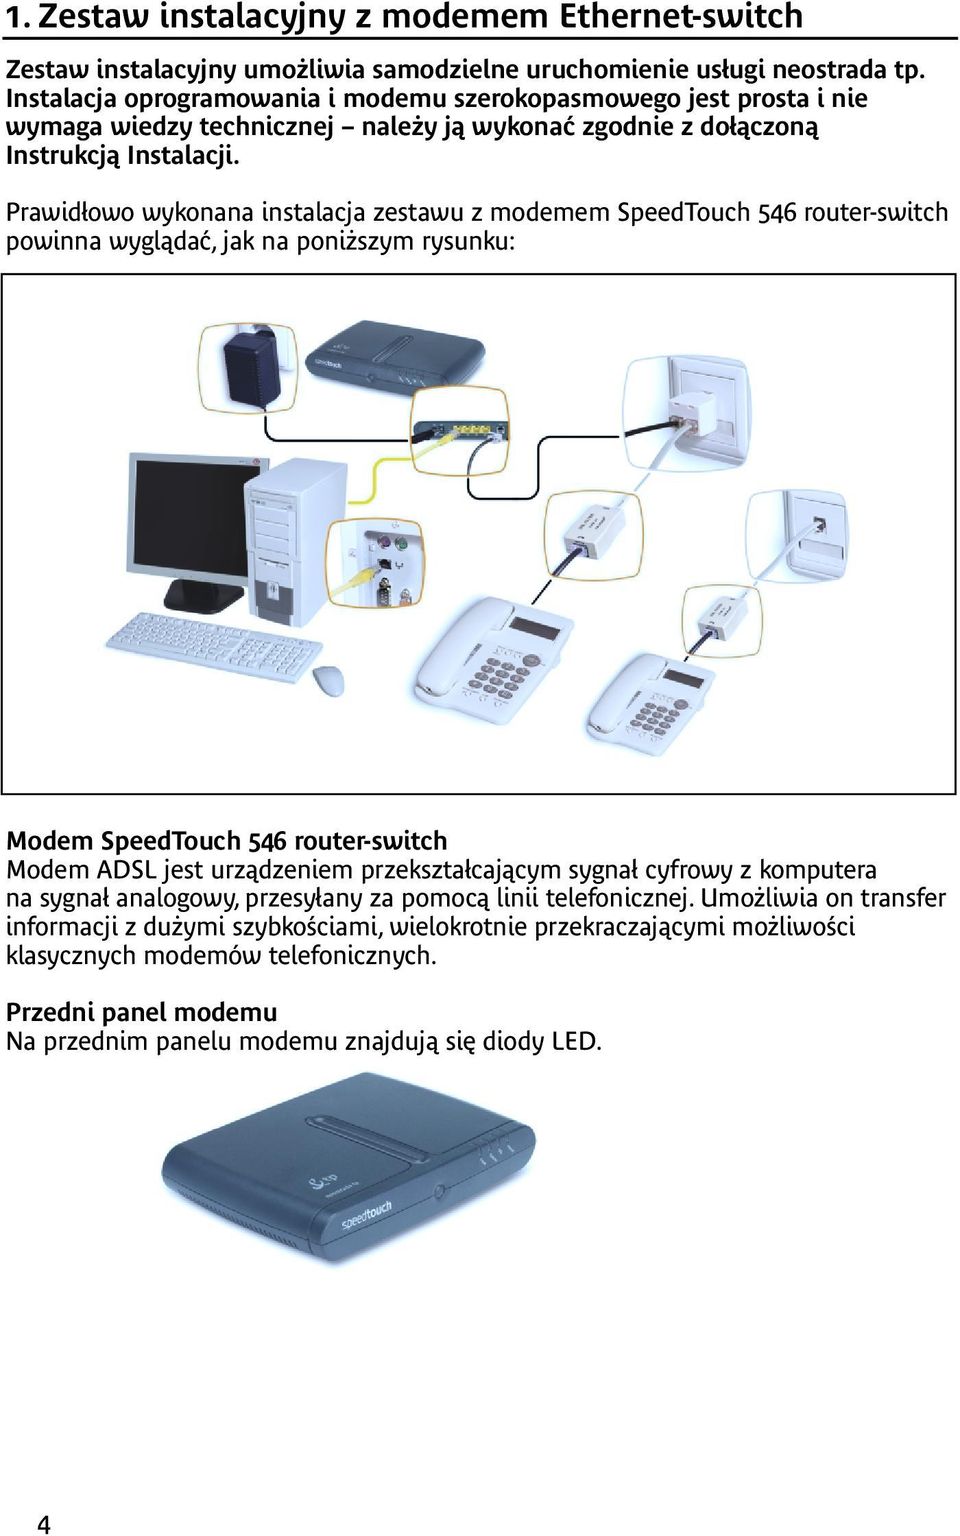 Prawidłowo wykonana instalacja zestawu z modemem SpeedTouch 546 router-switch powinna wyglądać, jak na poniższym rysunku: Modem SpeedTouch 546 router-switch Modem ADSL jest urządzeniem